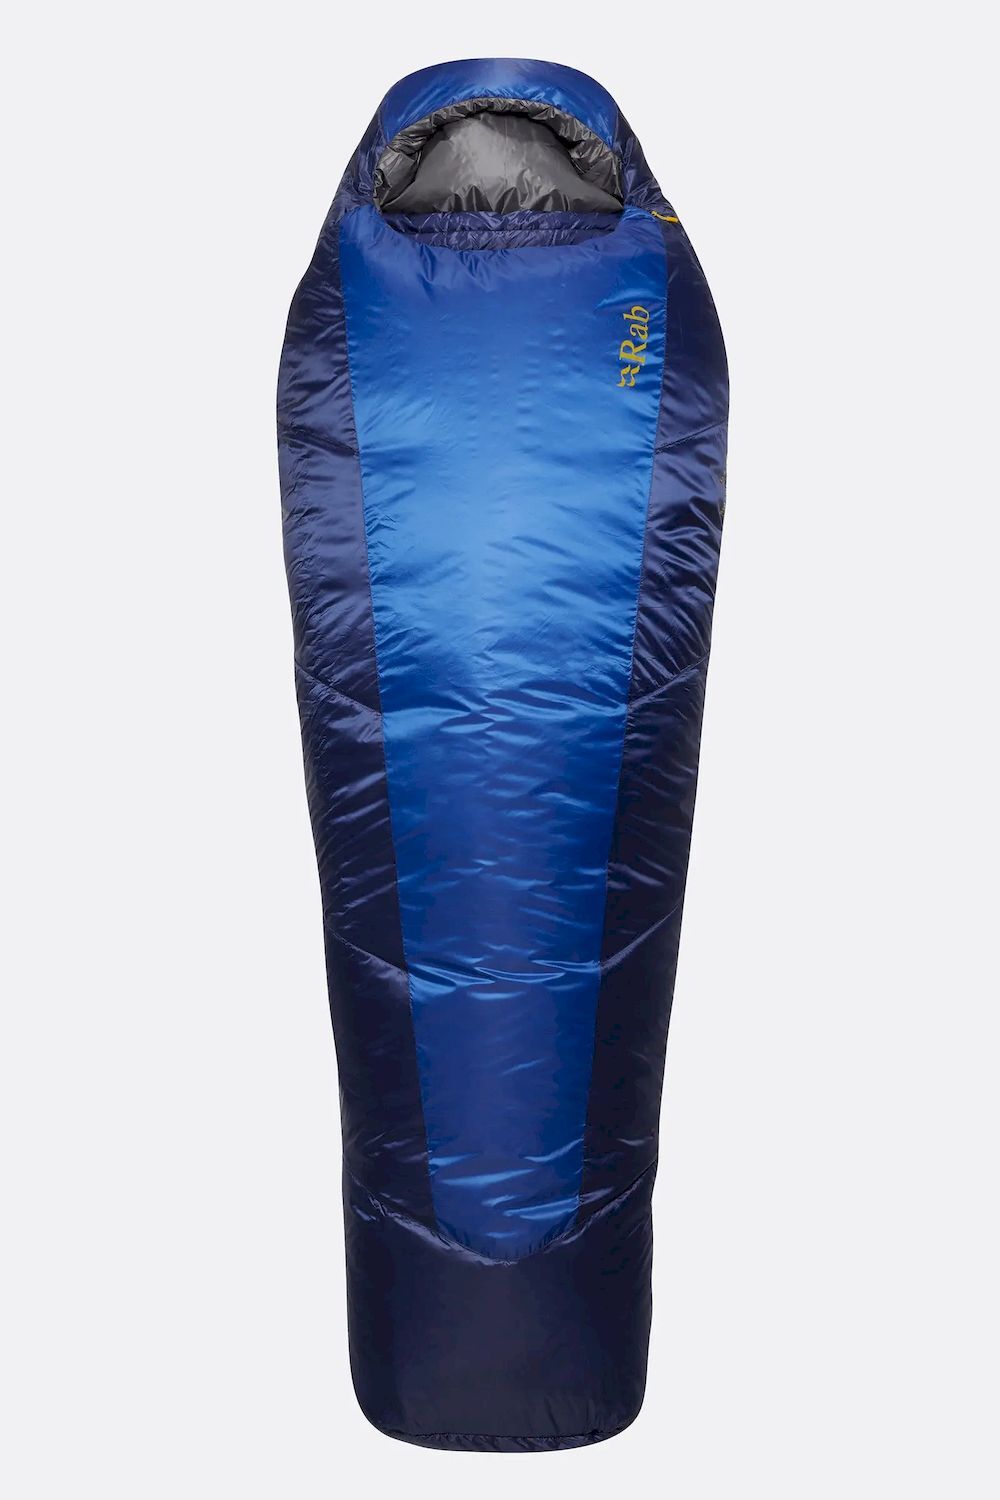 Rab Solar Eco 2 - Sleeping bag - 0